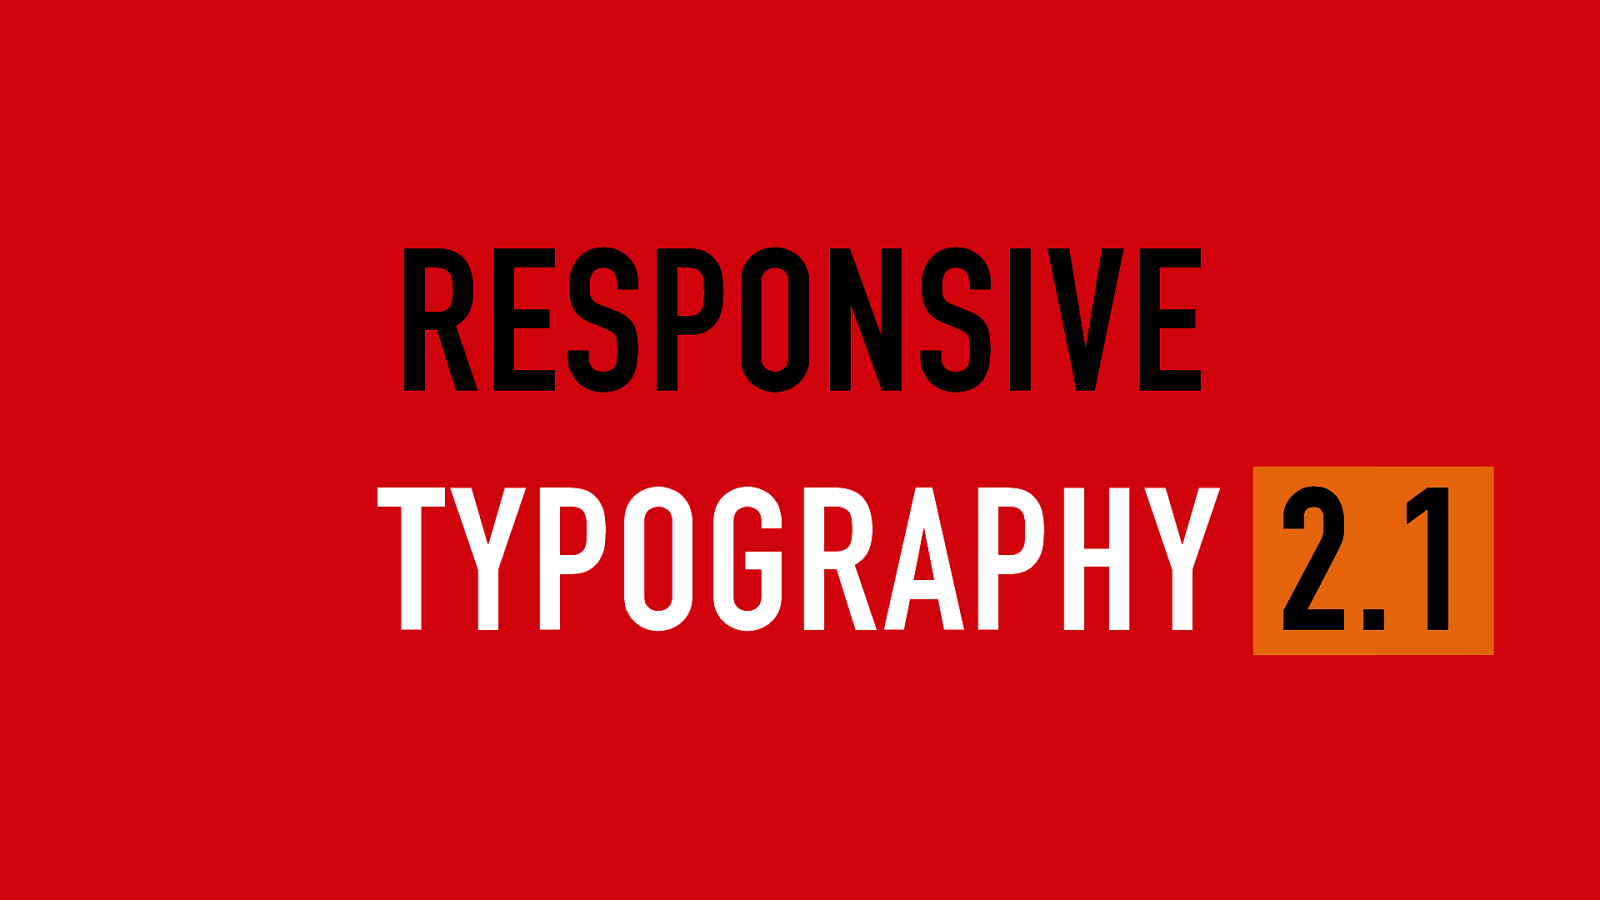 Responsive typography 2.1